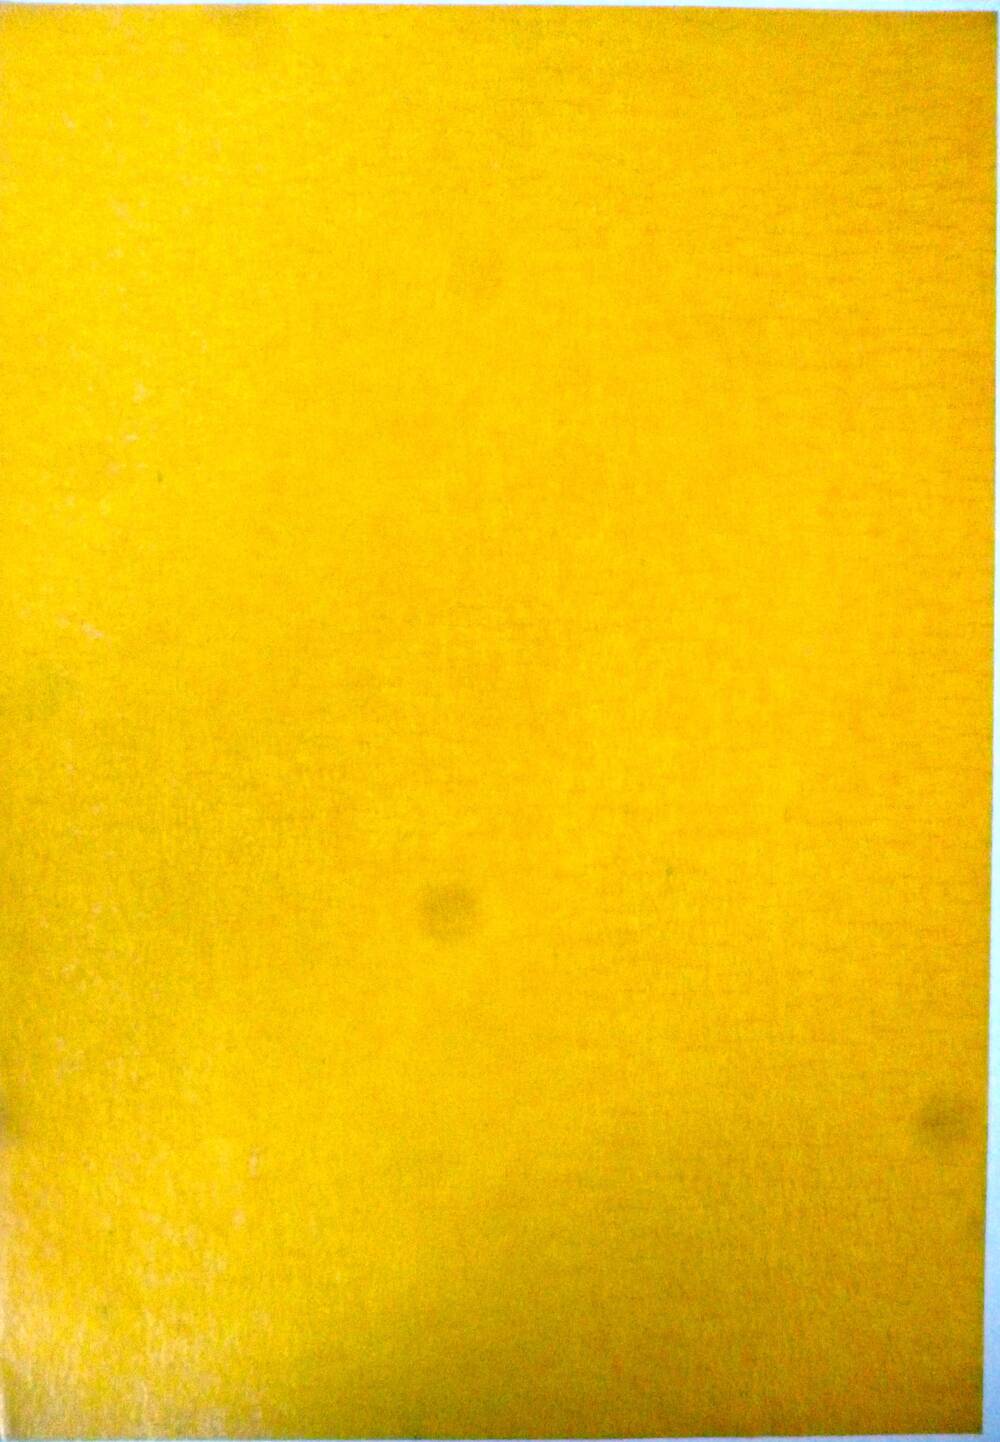 Копировальная бумага, жёлтого цвета.